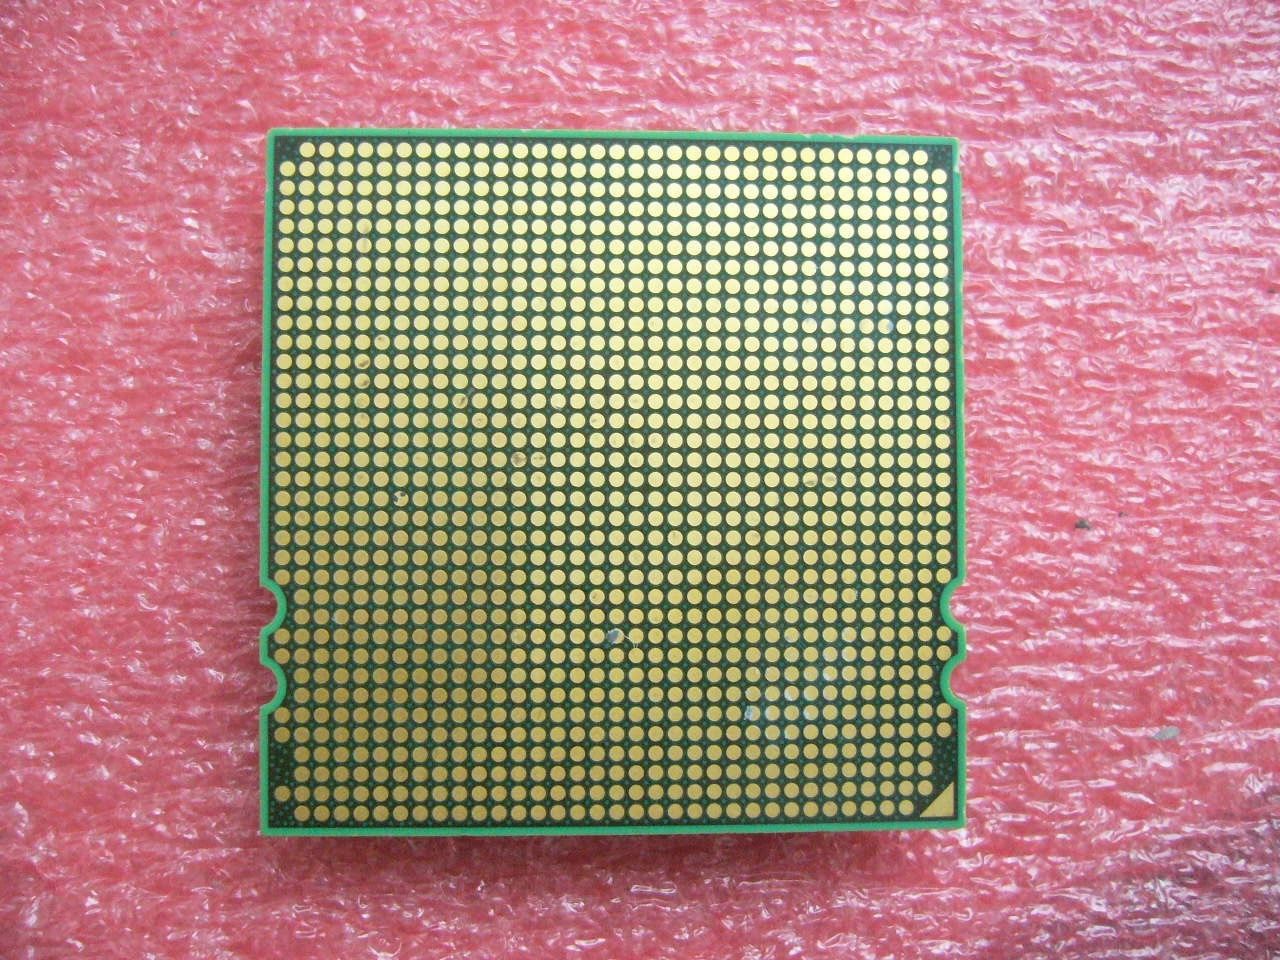 QTY 1x AMD Opteron 2354 2.2 GHz Quad-Core (OS2354WAL4BGH) CPU Socket F 1207 - zum Schließen ins Bild klicken